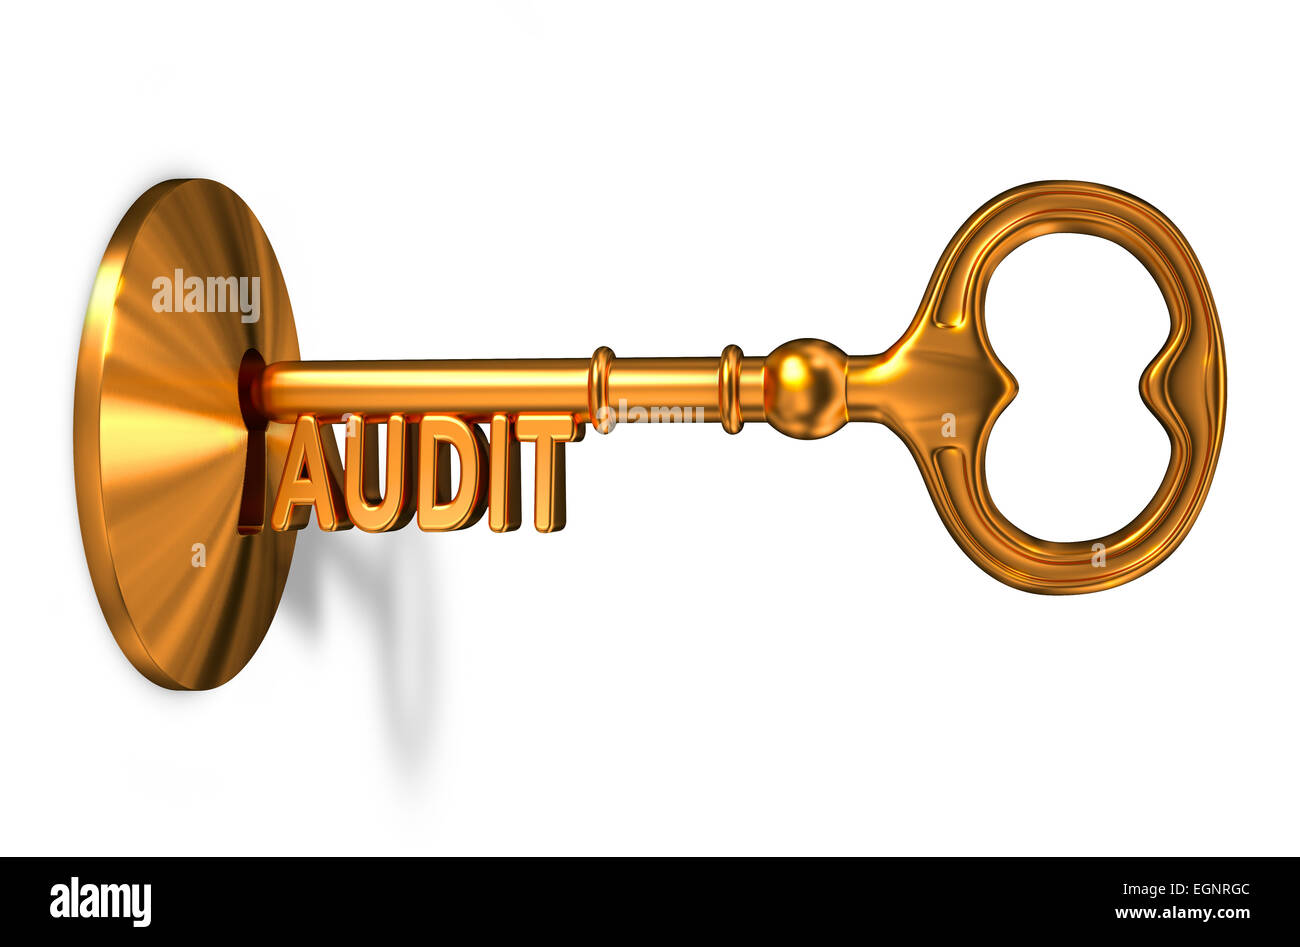 Audit - Golden Key viene inserita nel foro di serratura. Foto Stock